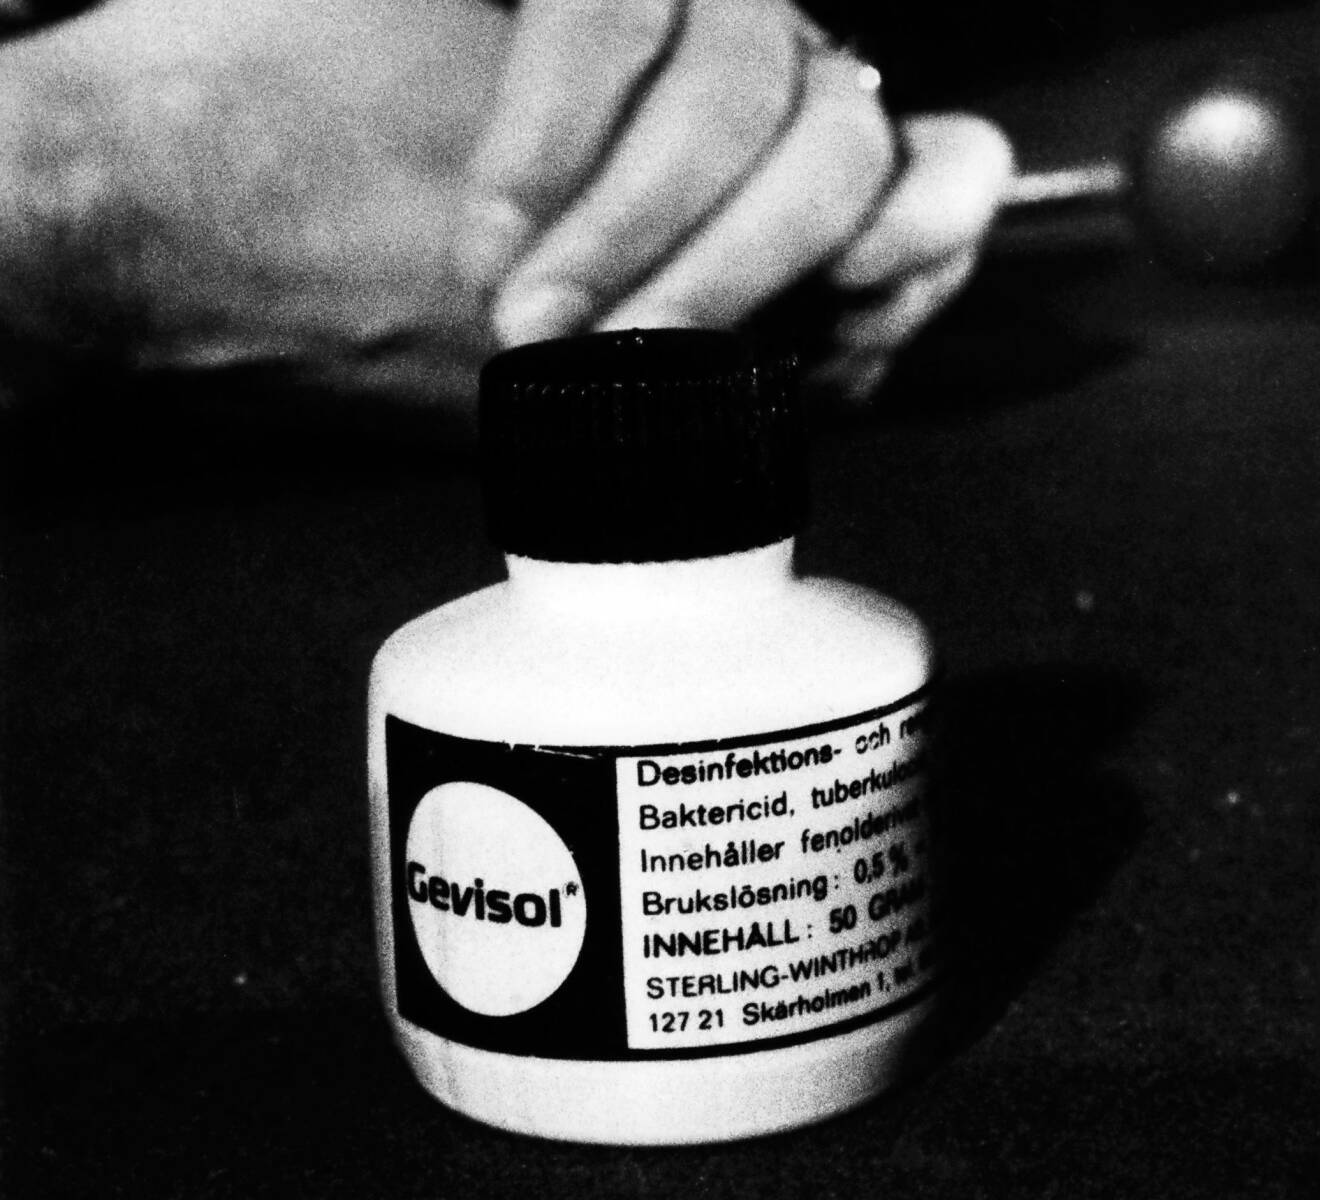 Pillerburk innehållande Gevisol som användes vid morden på Malmö Östra sjukhus.